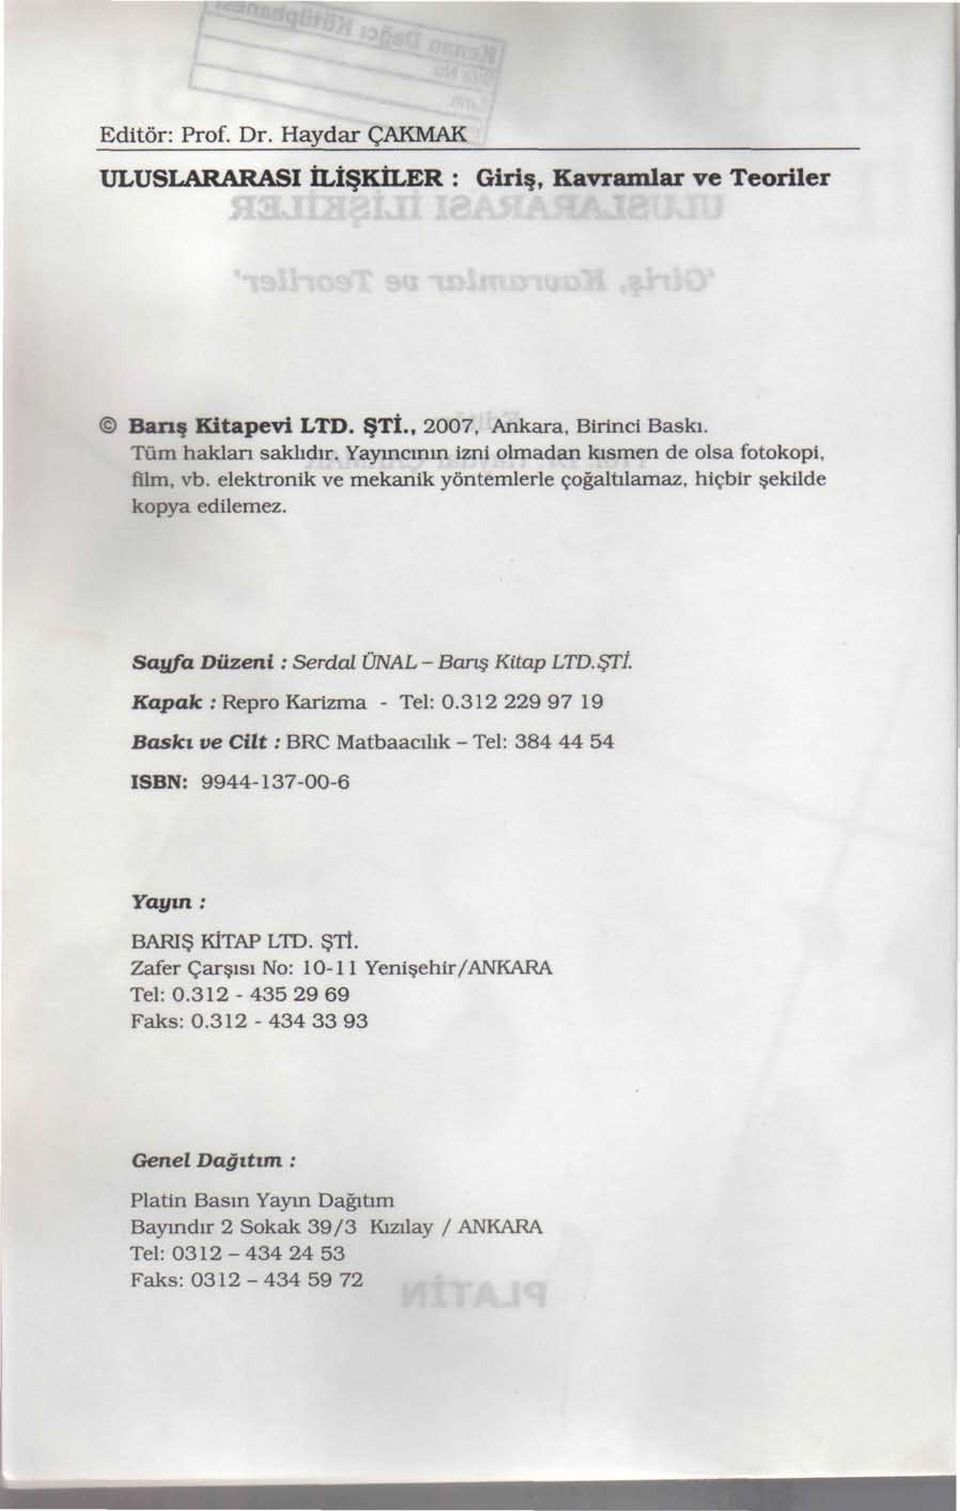 Sayfa Düzeni : Serdal ÜNAL - Barış Kitap LTD. ŞTİ. Kapak : Repro Karizma - Tel: 0.